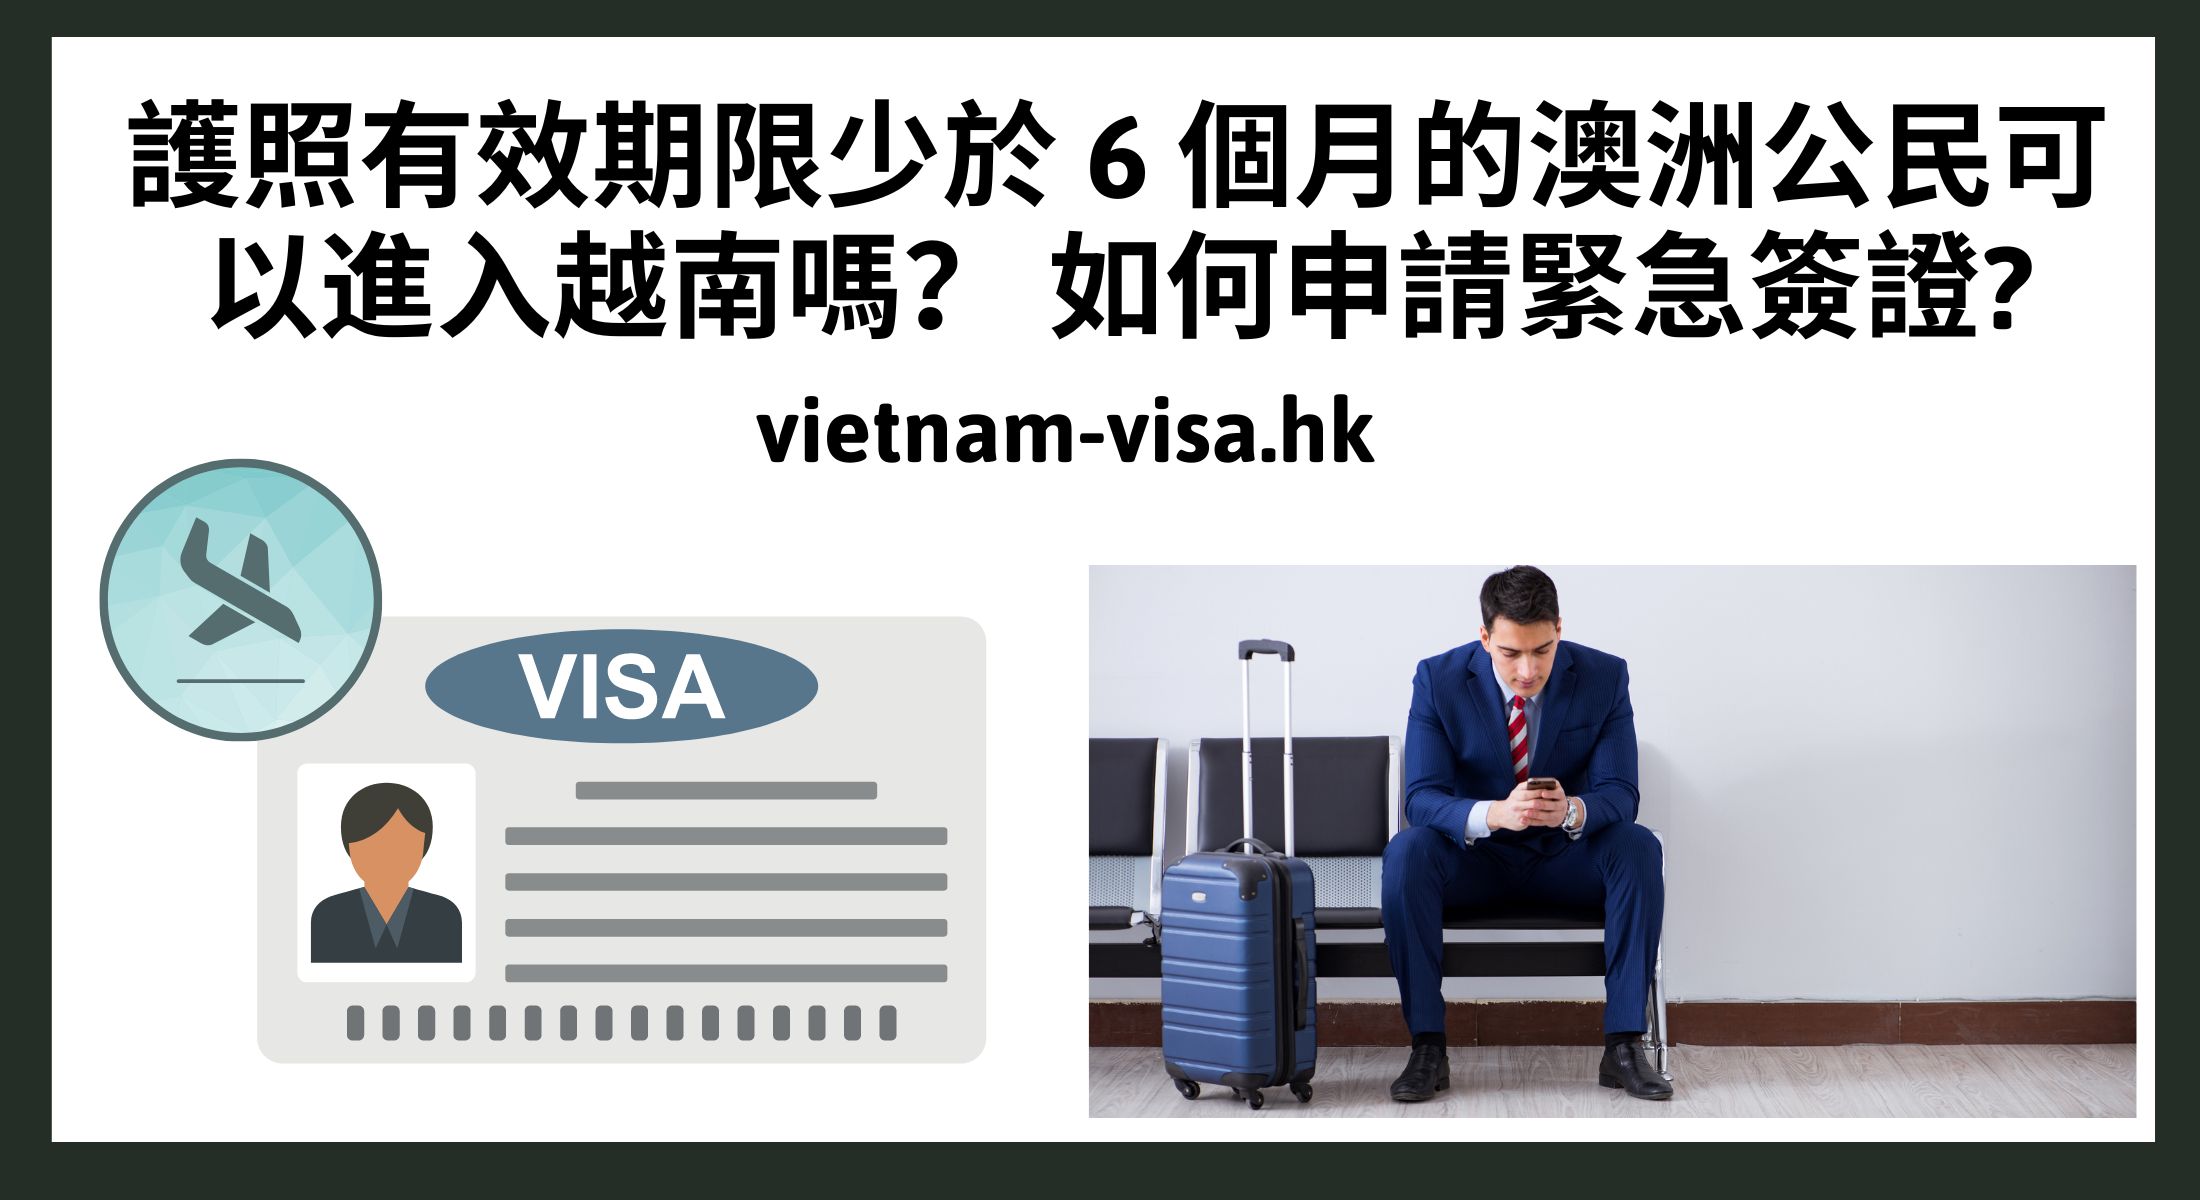 護照有效期限少於 6 個月的澳洲公民可以進入越南嗎？ 如何申請緊急簽證?